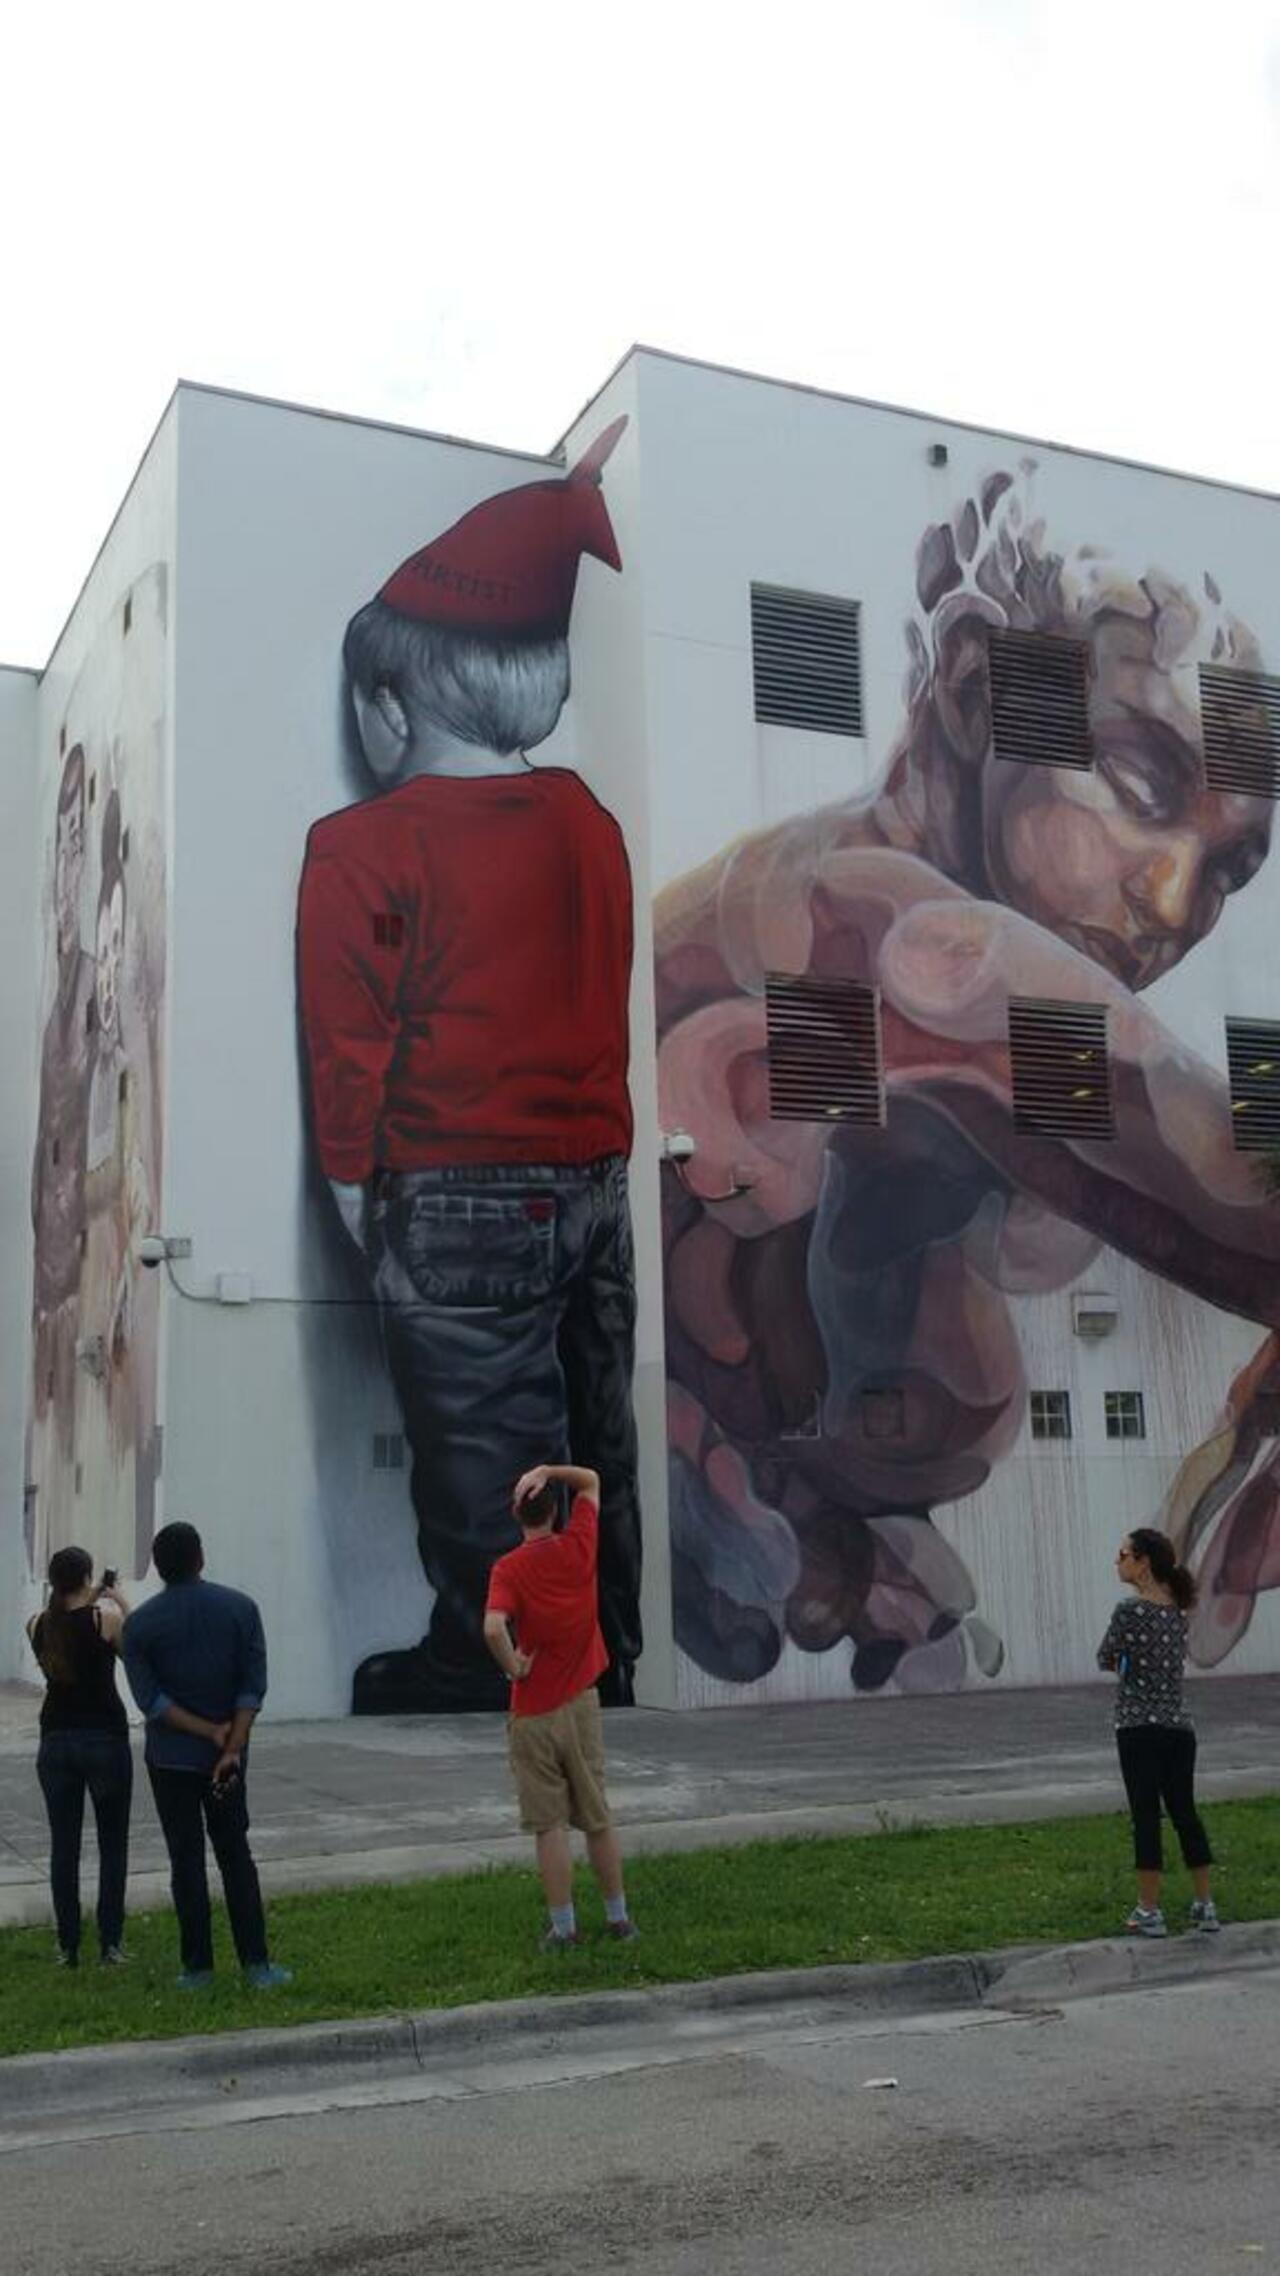 Miami, un #museo al aire libre del #graffiti. #SoMiami #StreetArt @MiamiandBeaches https://t.co/7tL2pdfKiA